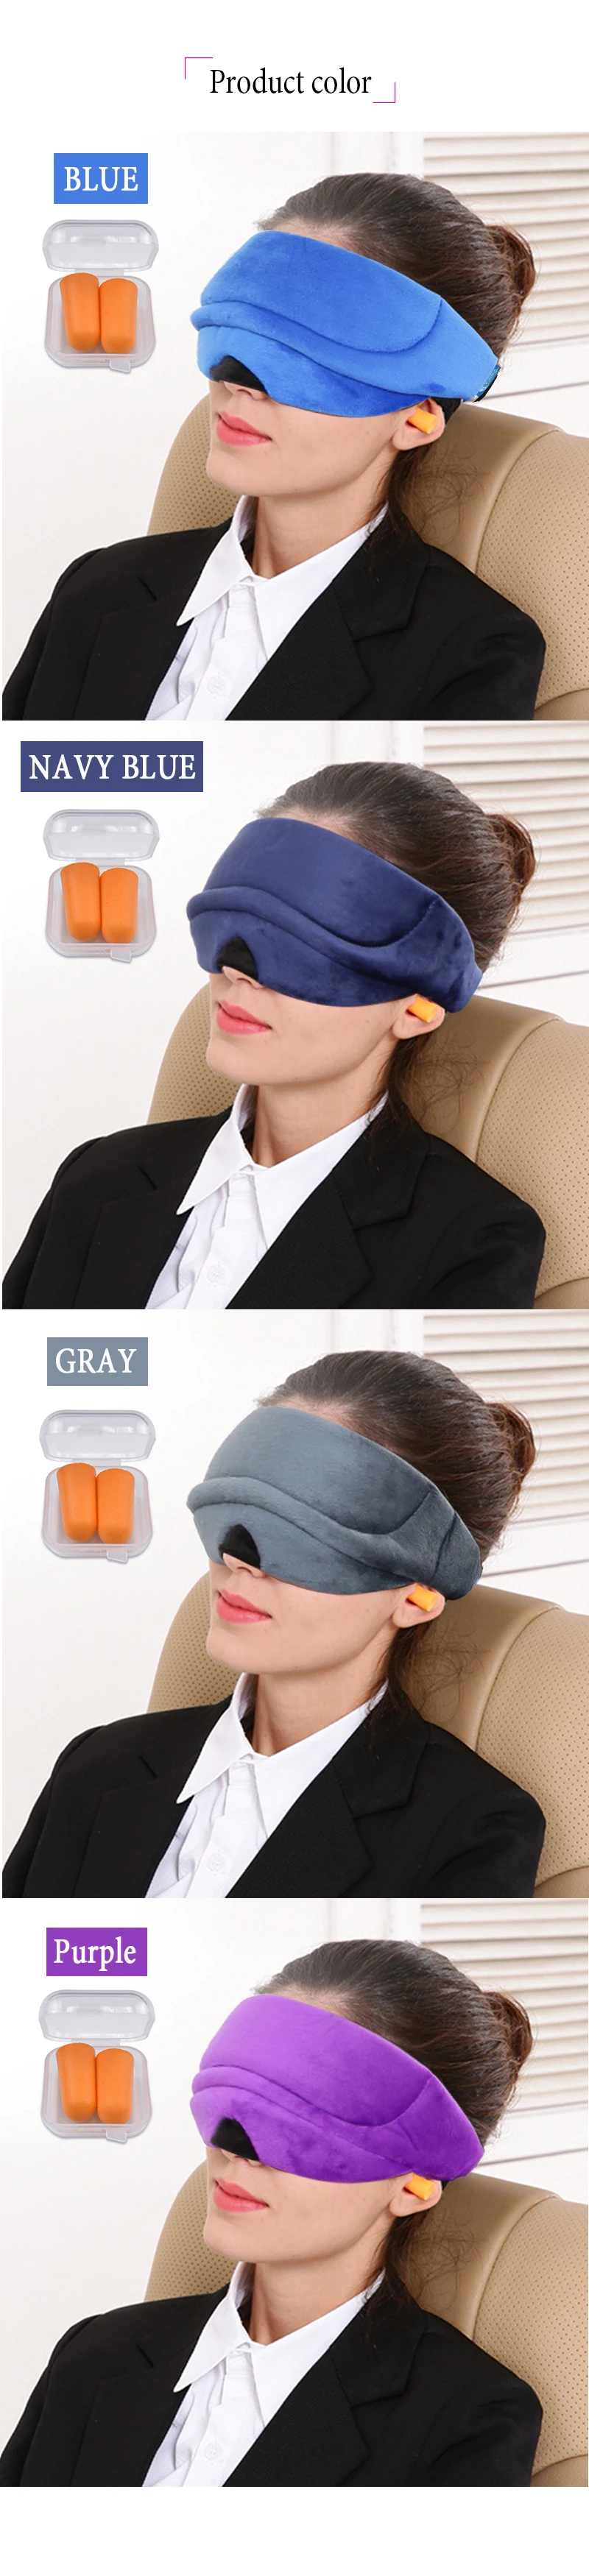 Супер высокого класса новый глаз-патч красота сна маски для век очки для устранения темных кругов для снятия признаков усталости с глаз Eye